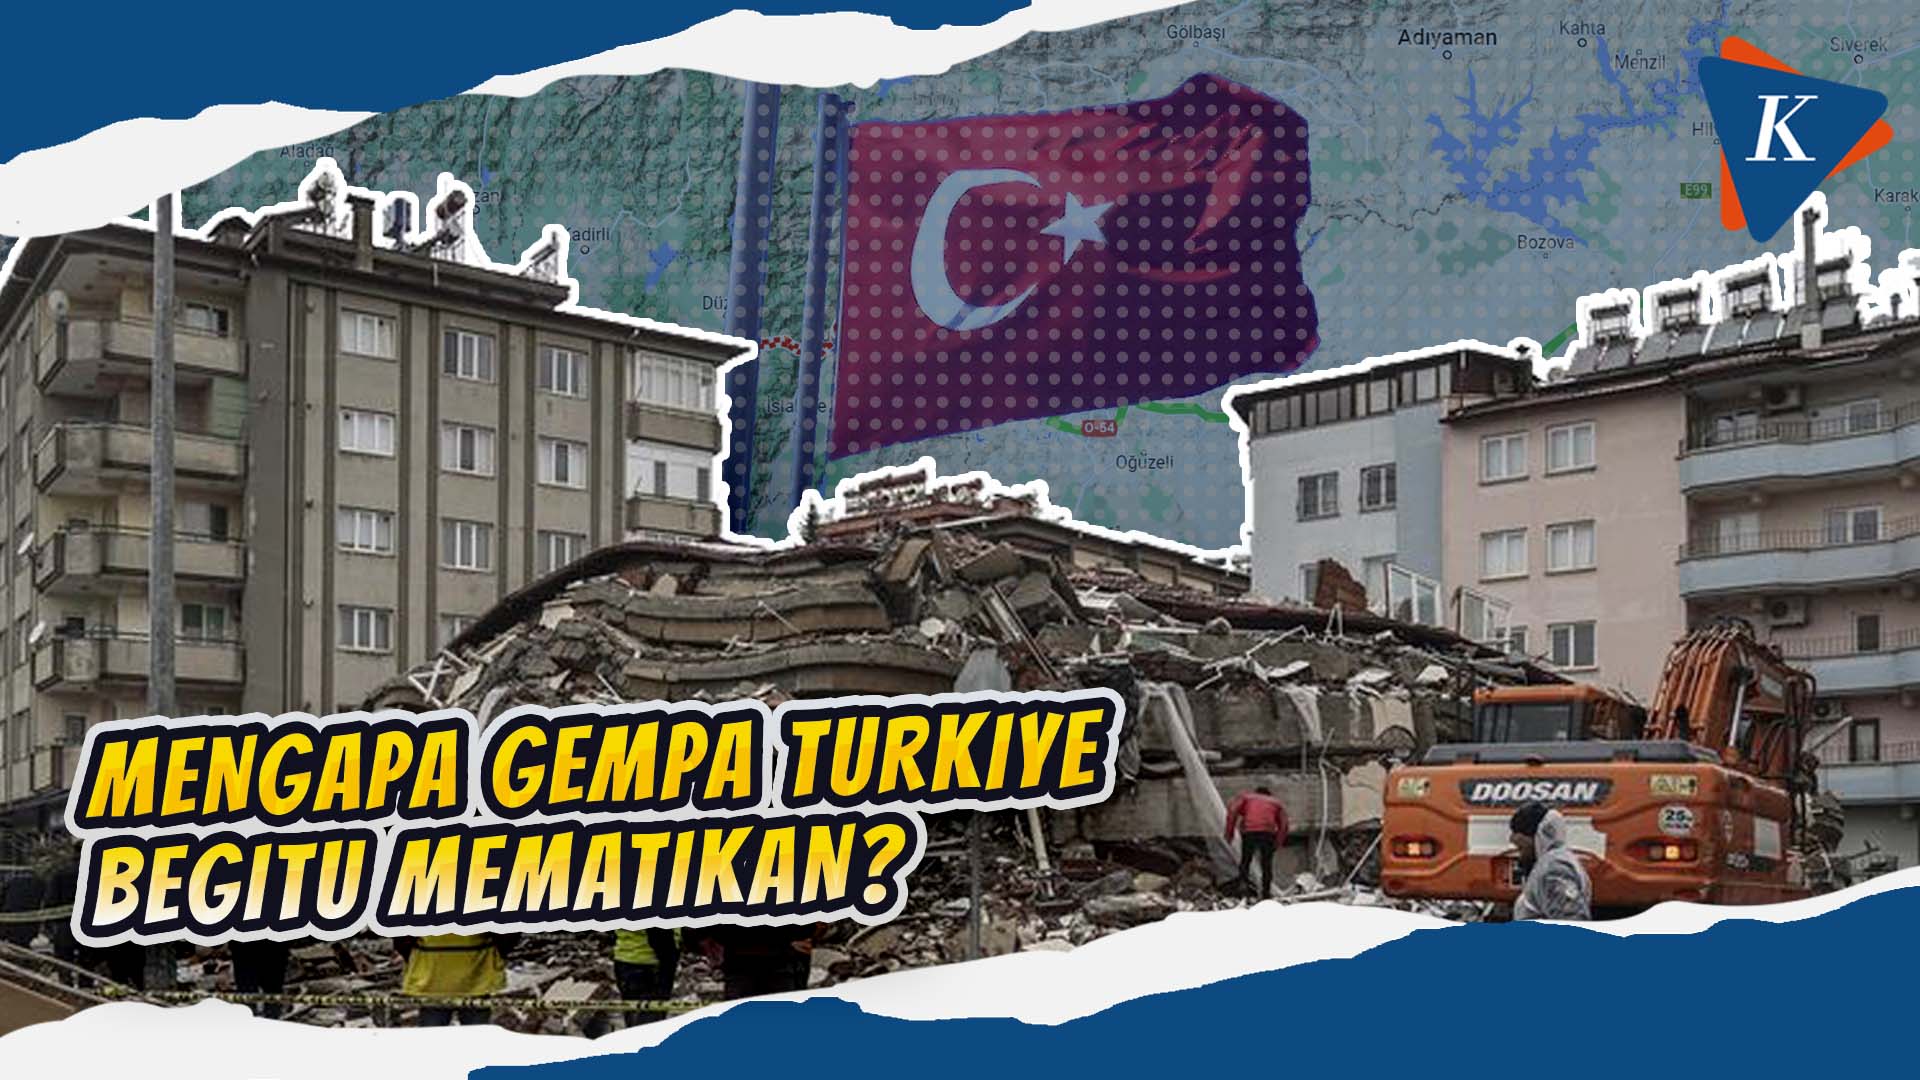 Ini Penyebab Gempa Turkiye Begitu Mematikan